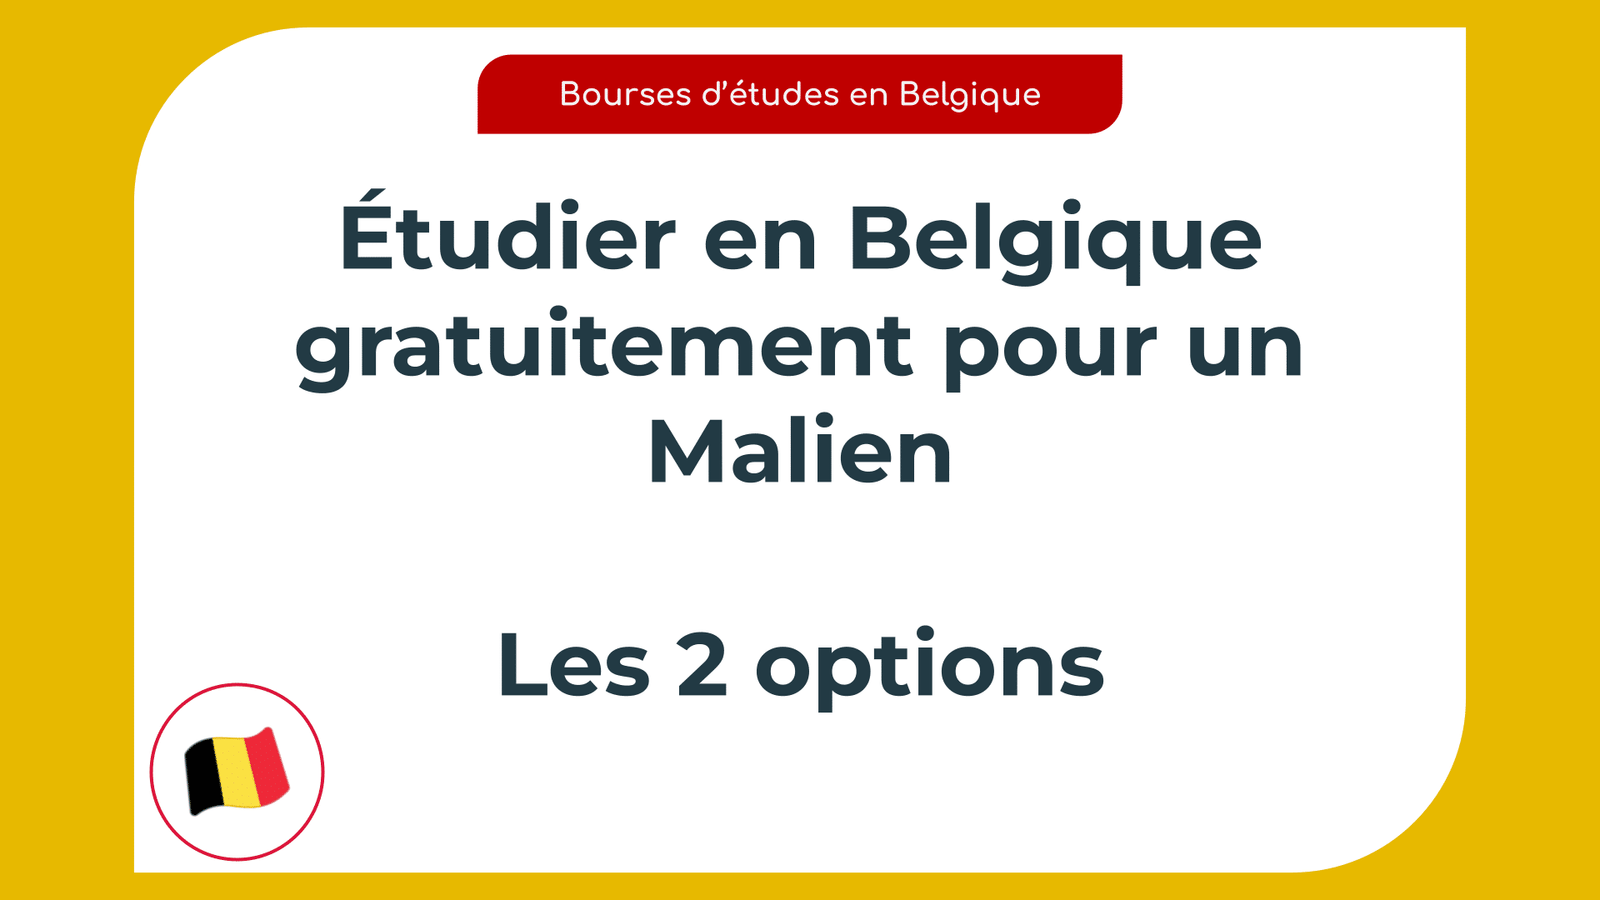 Étudier en Belgique gratuitement pour un Malien